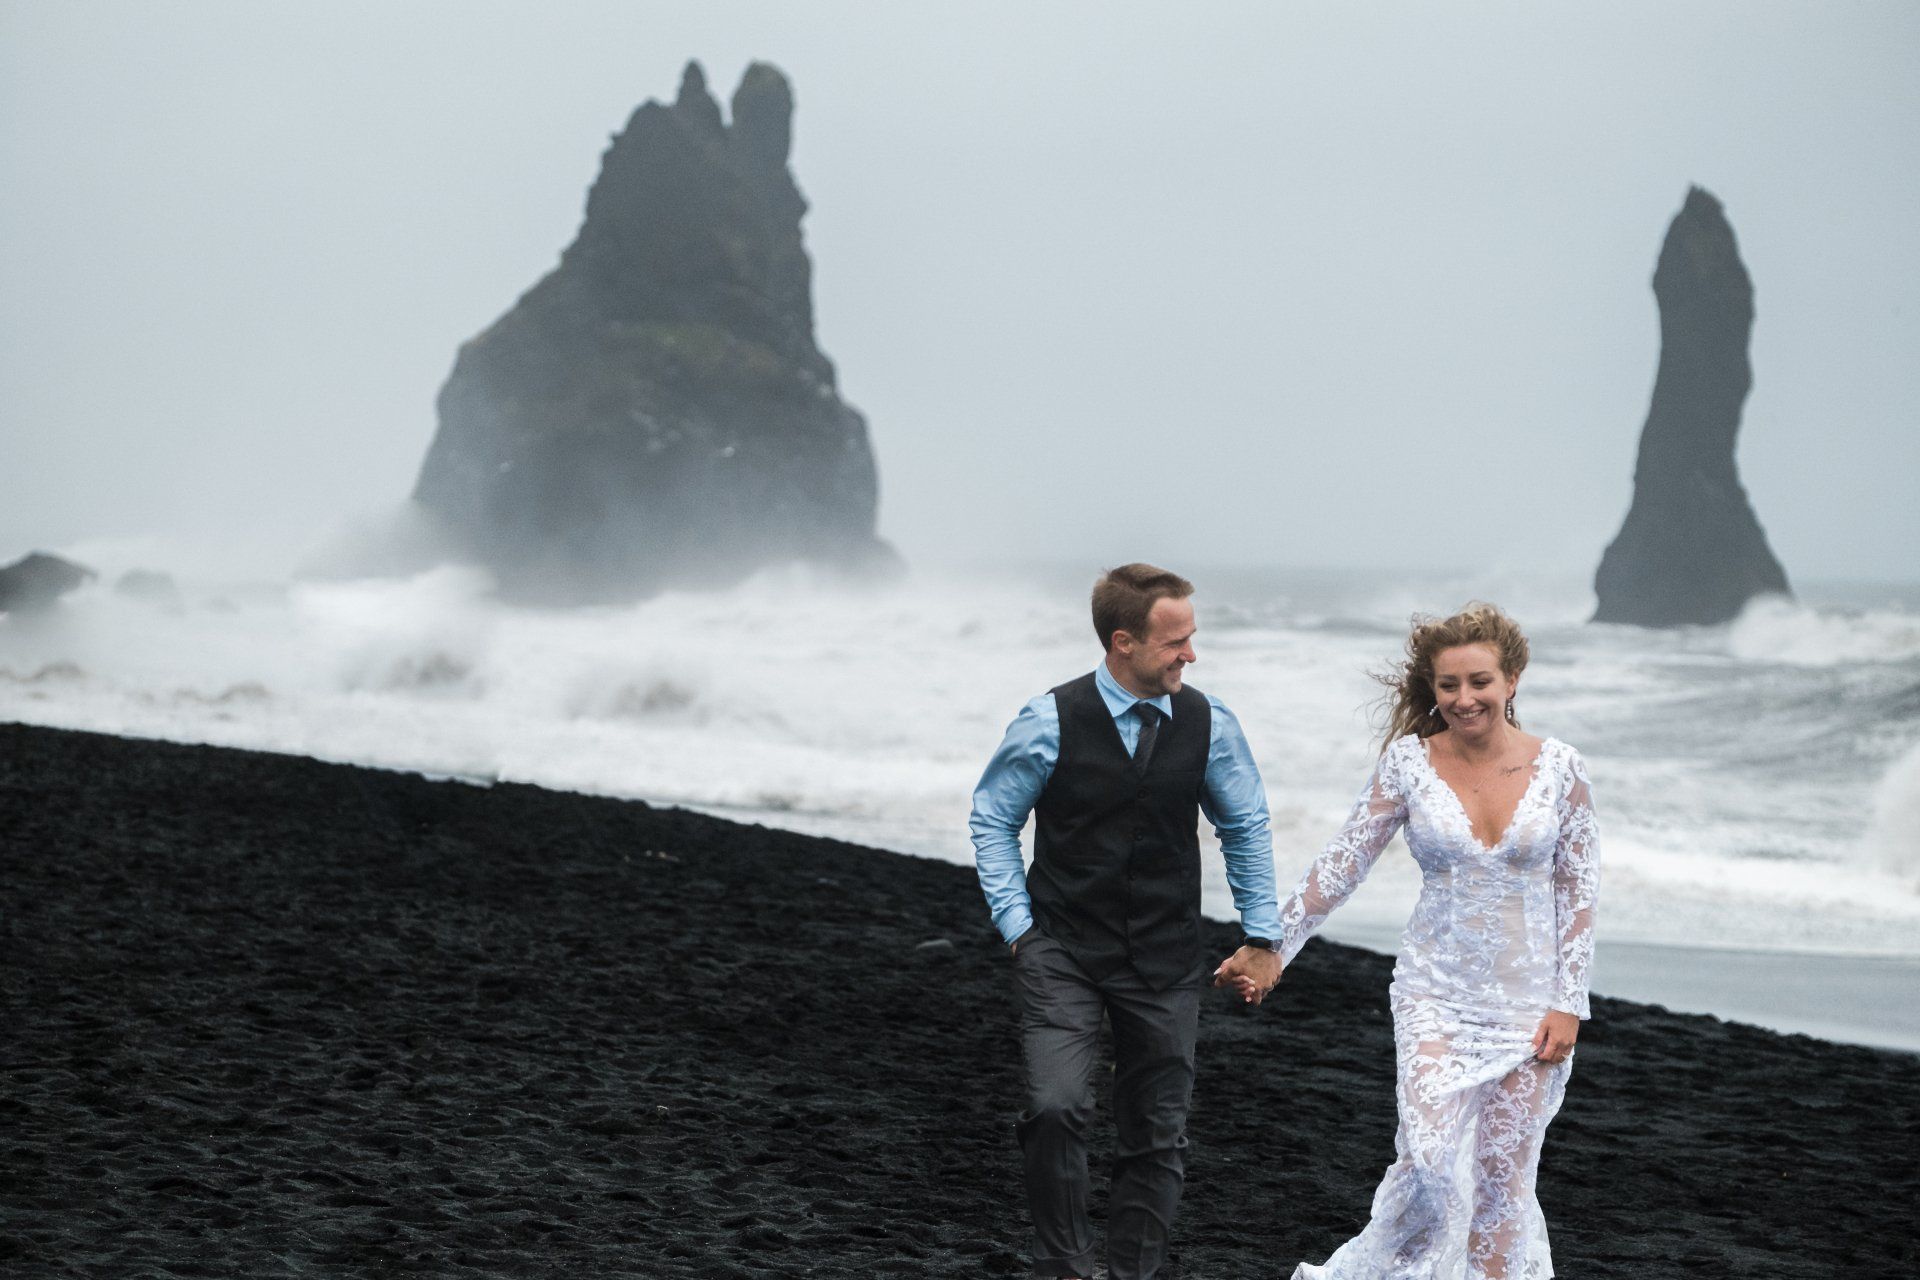 Reynisfjara black sand beach in Iceland, gettin married at Reynisfjara black sand beach